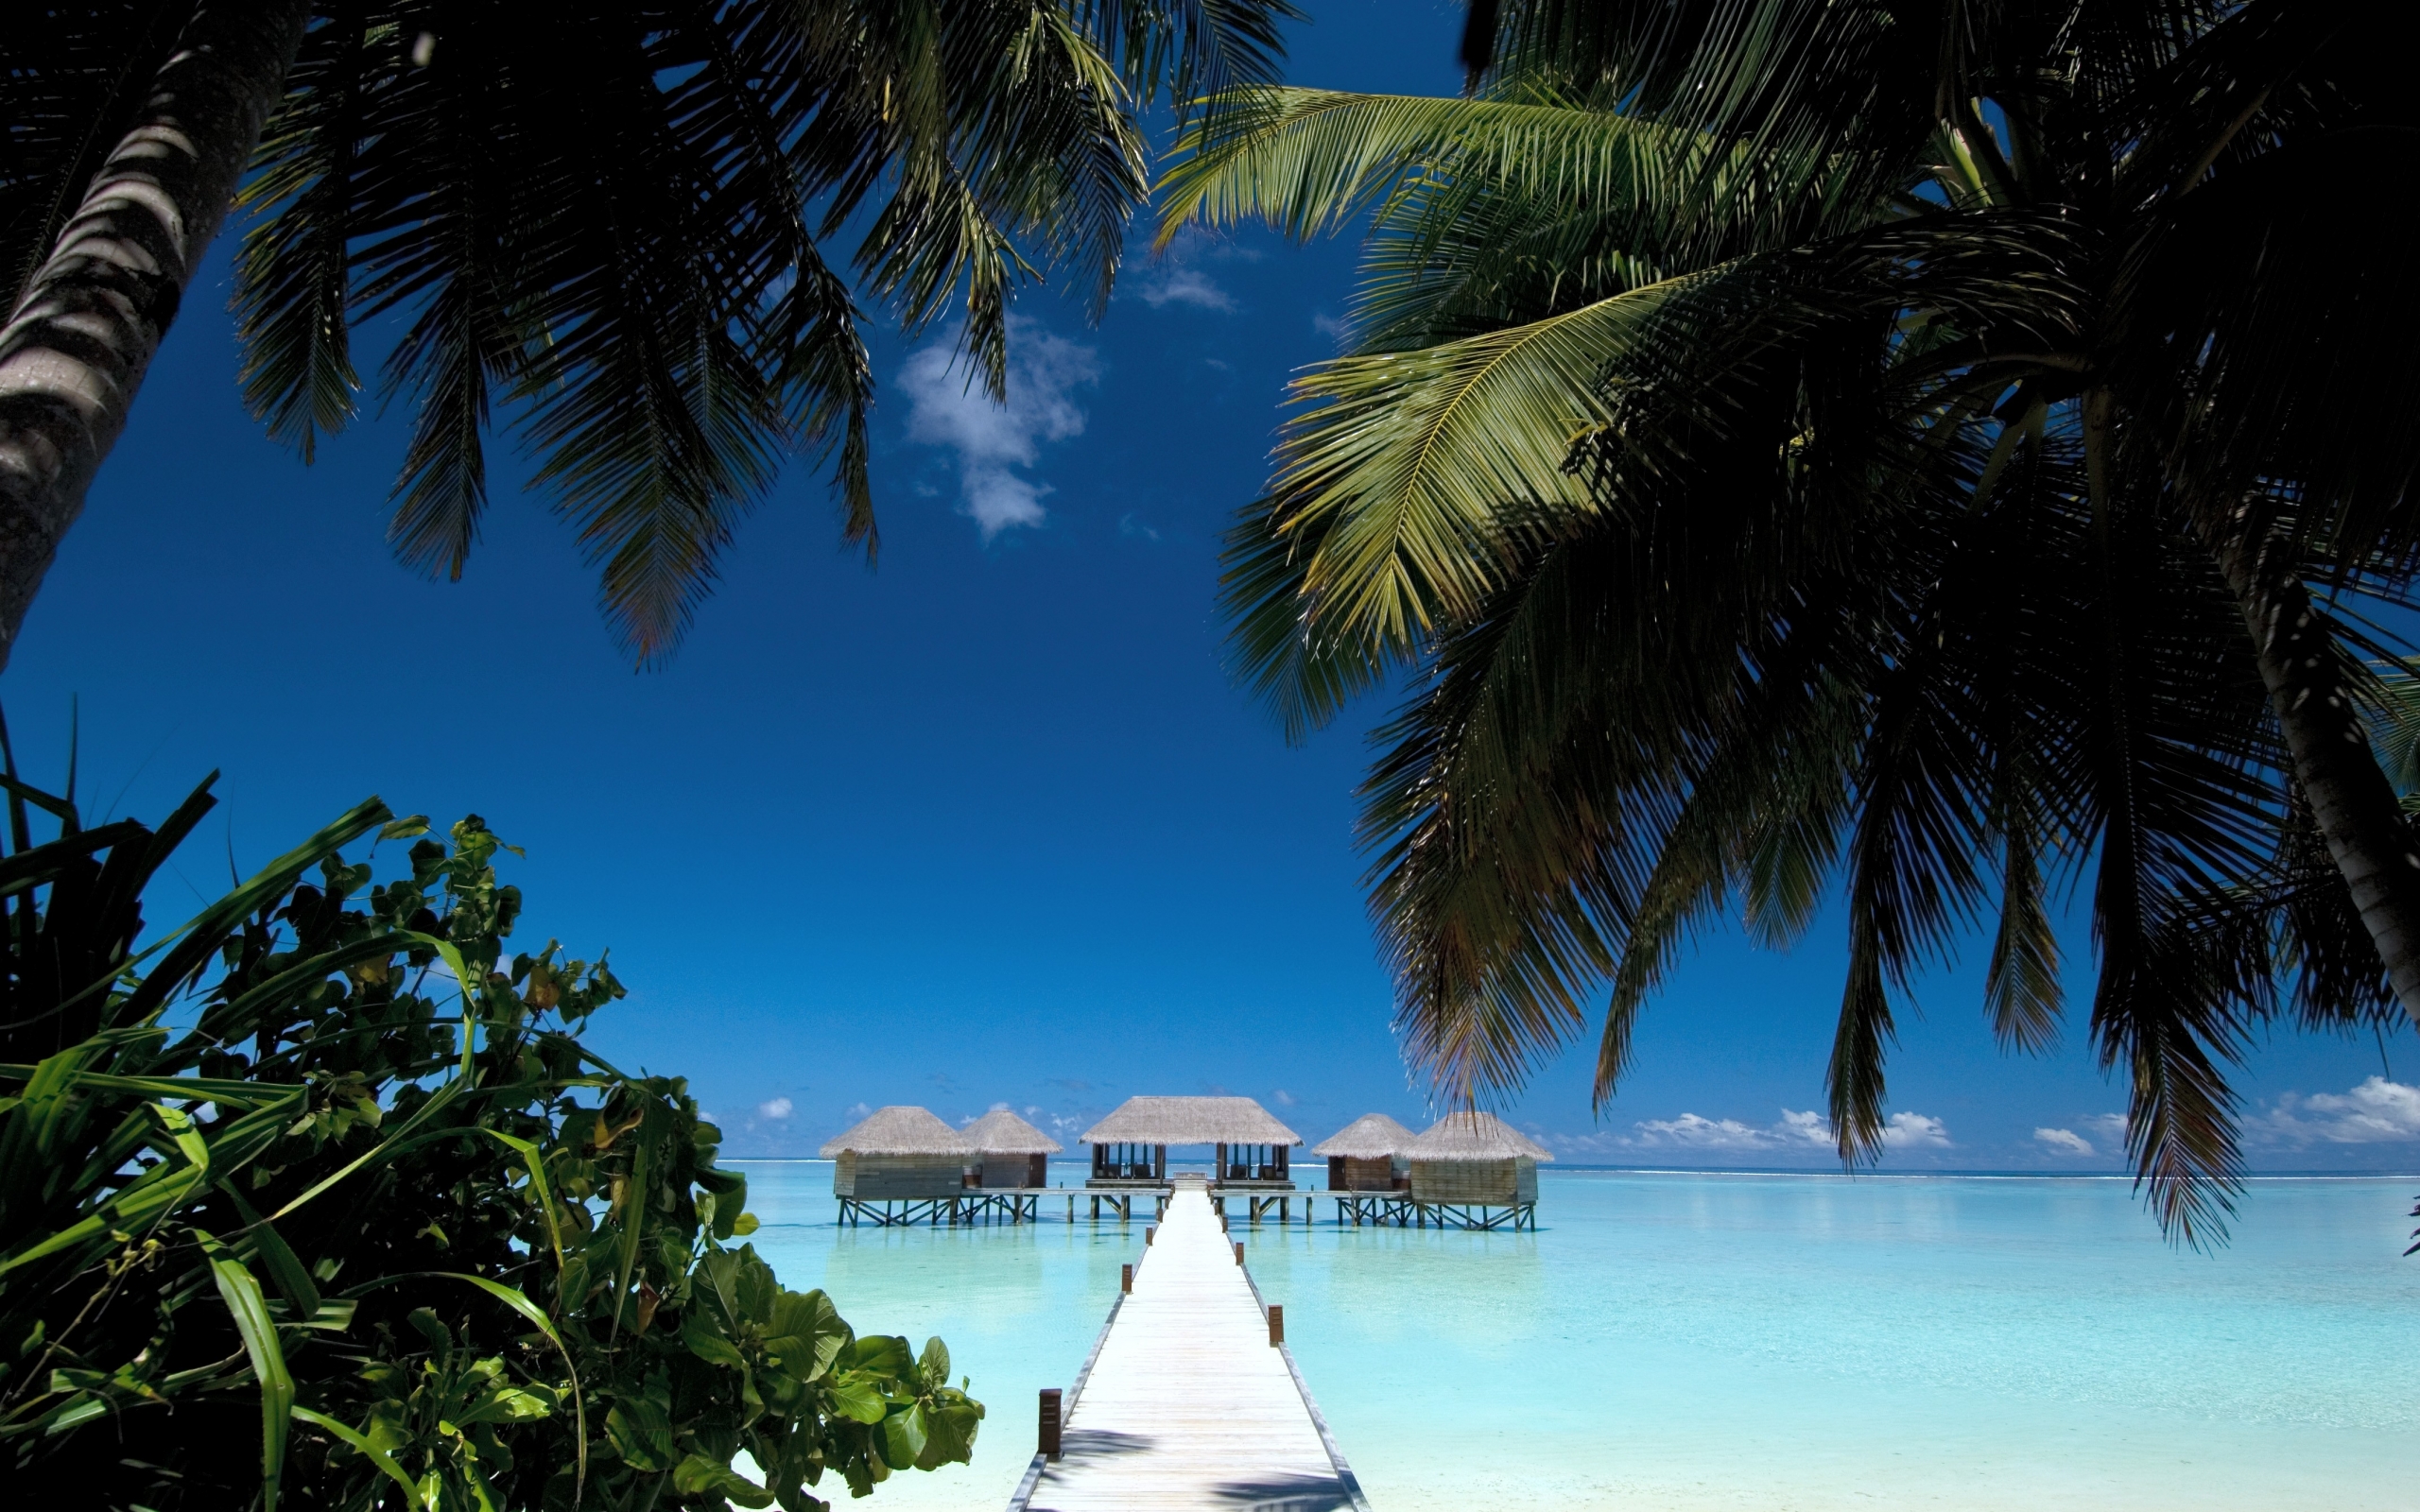 tropical paradise maldives beach house palms 4288x2848 wallpaper High